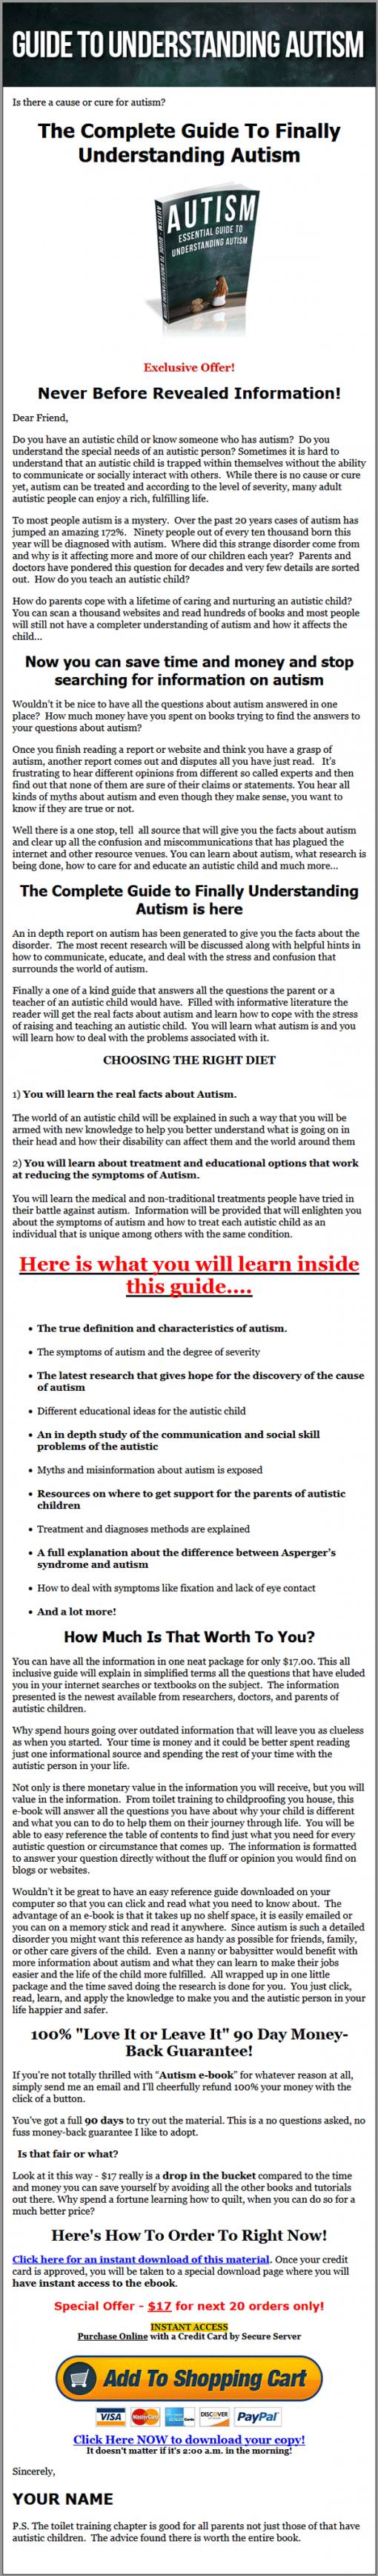 Guide to Understanding Autism PLR eBook